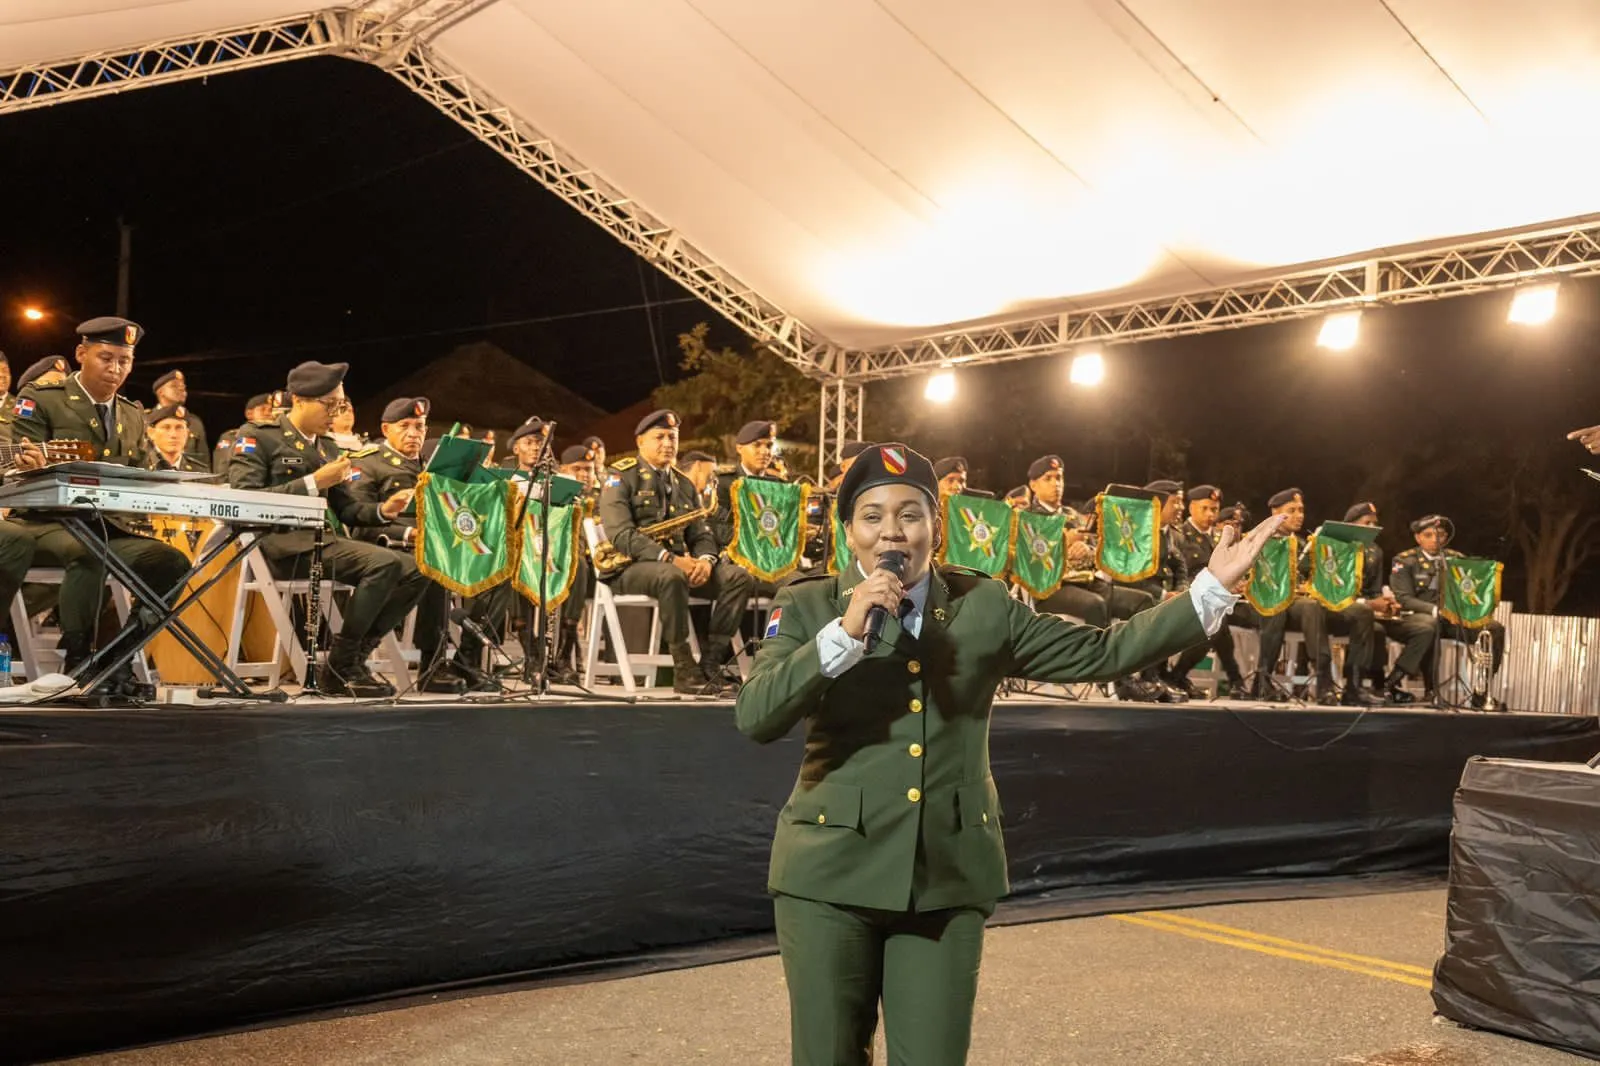 Ejército celebra en Montecristi concierto patriótico “Dominicana es mi Patria”